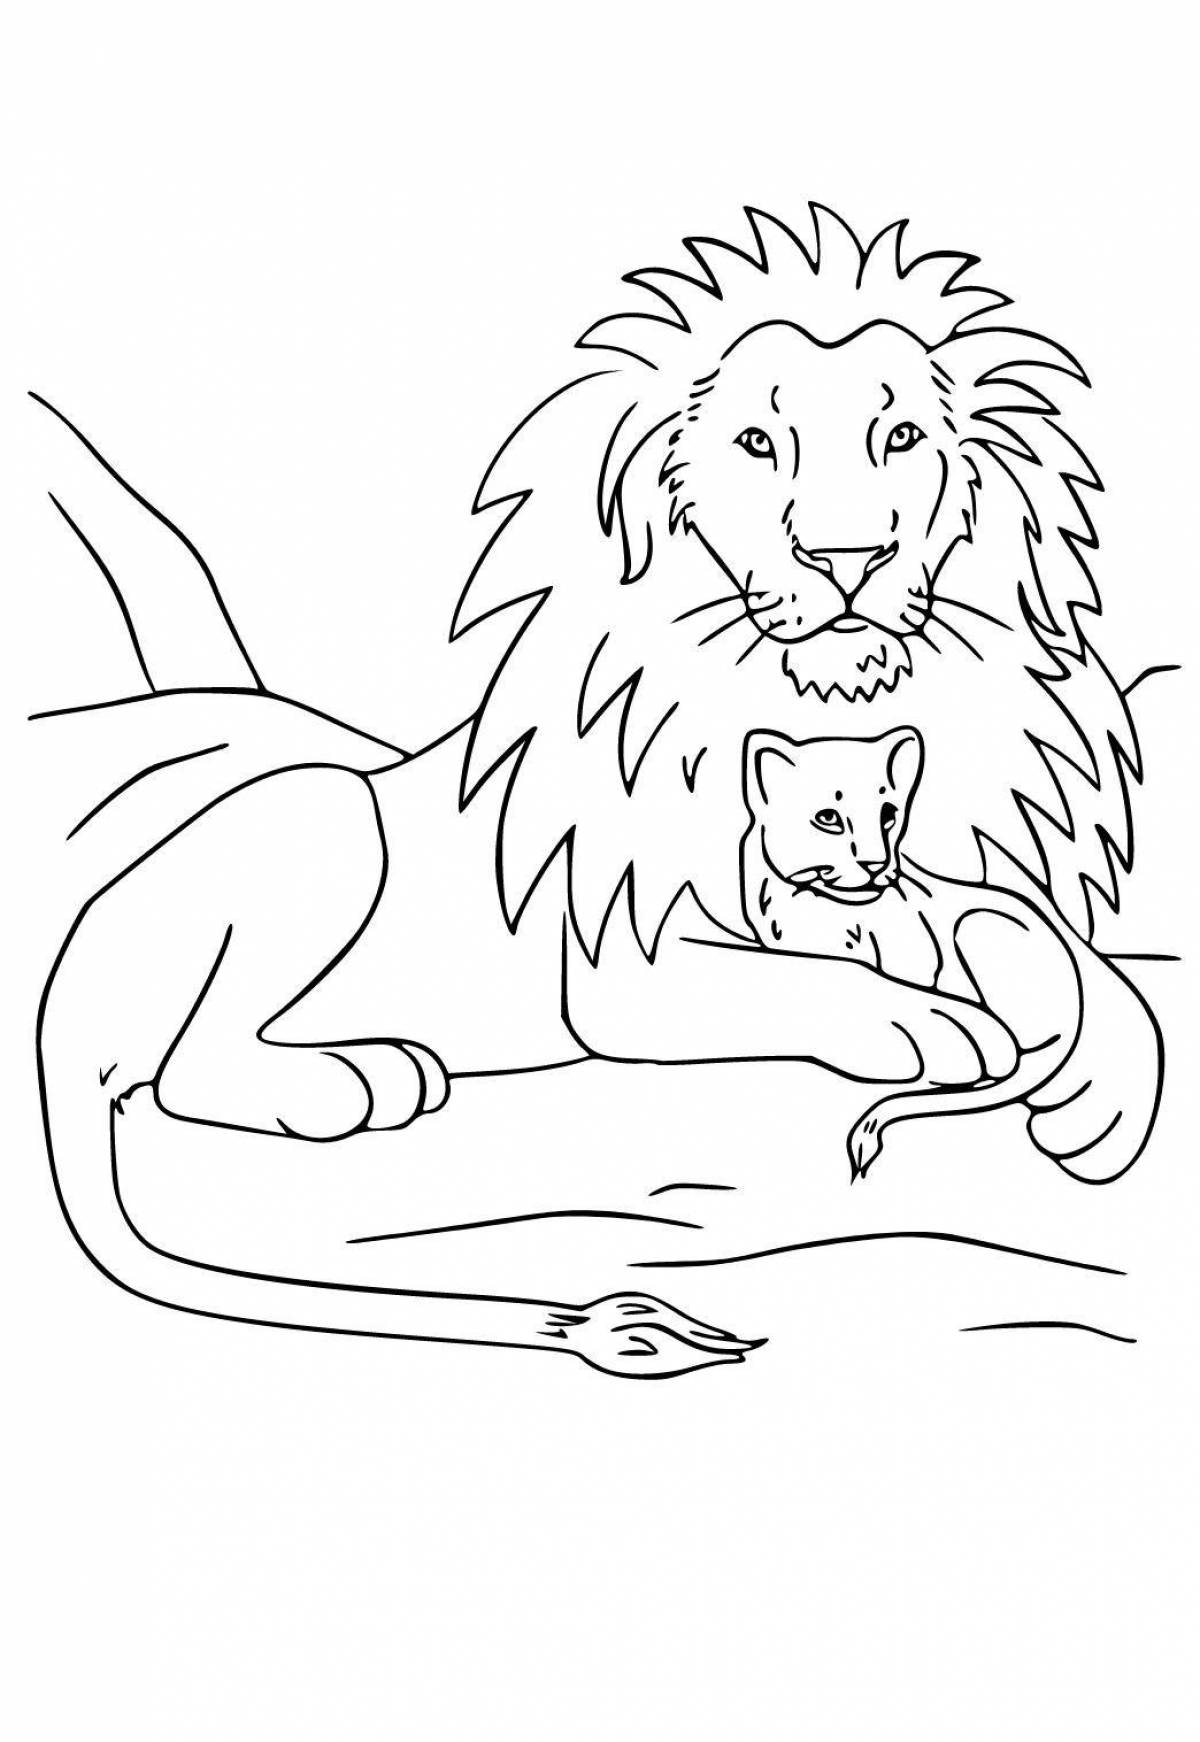 Блестящая раскраска льва для детей 3-4 лет